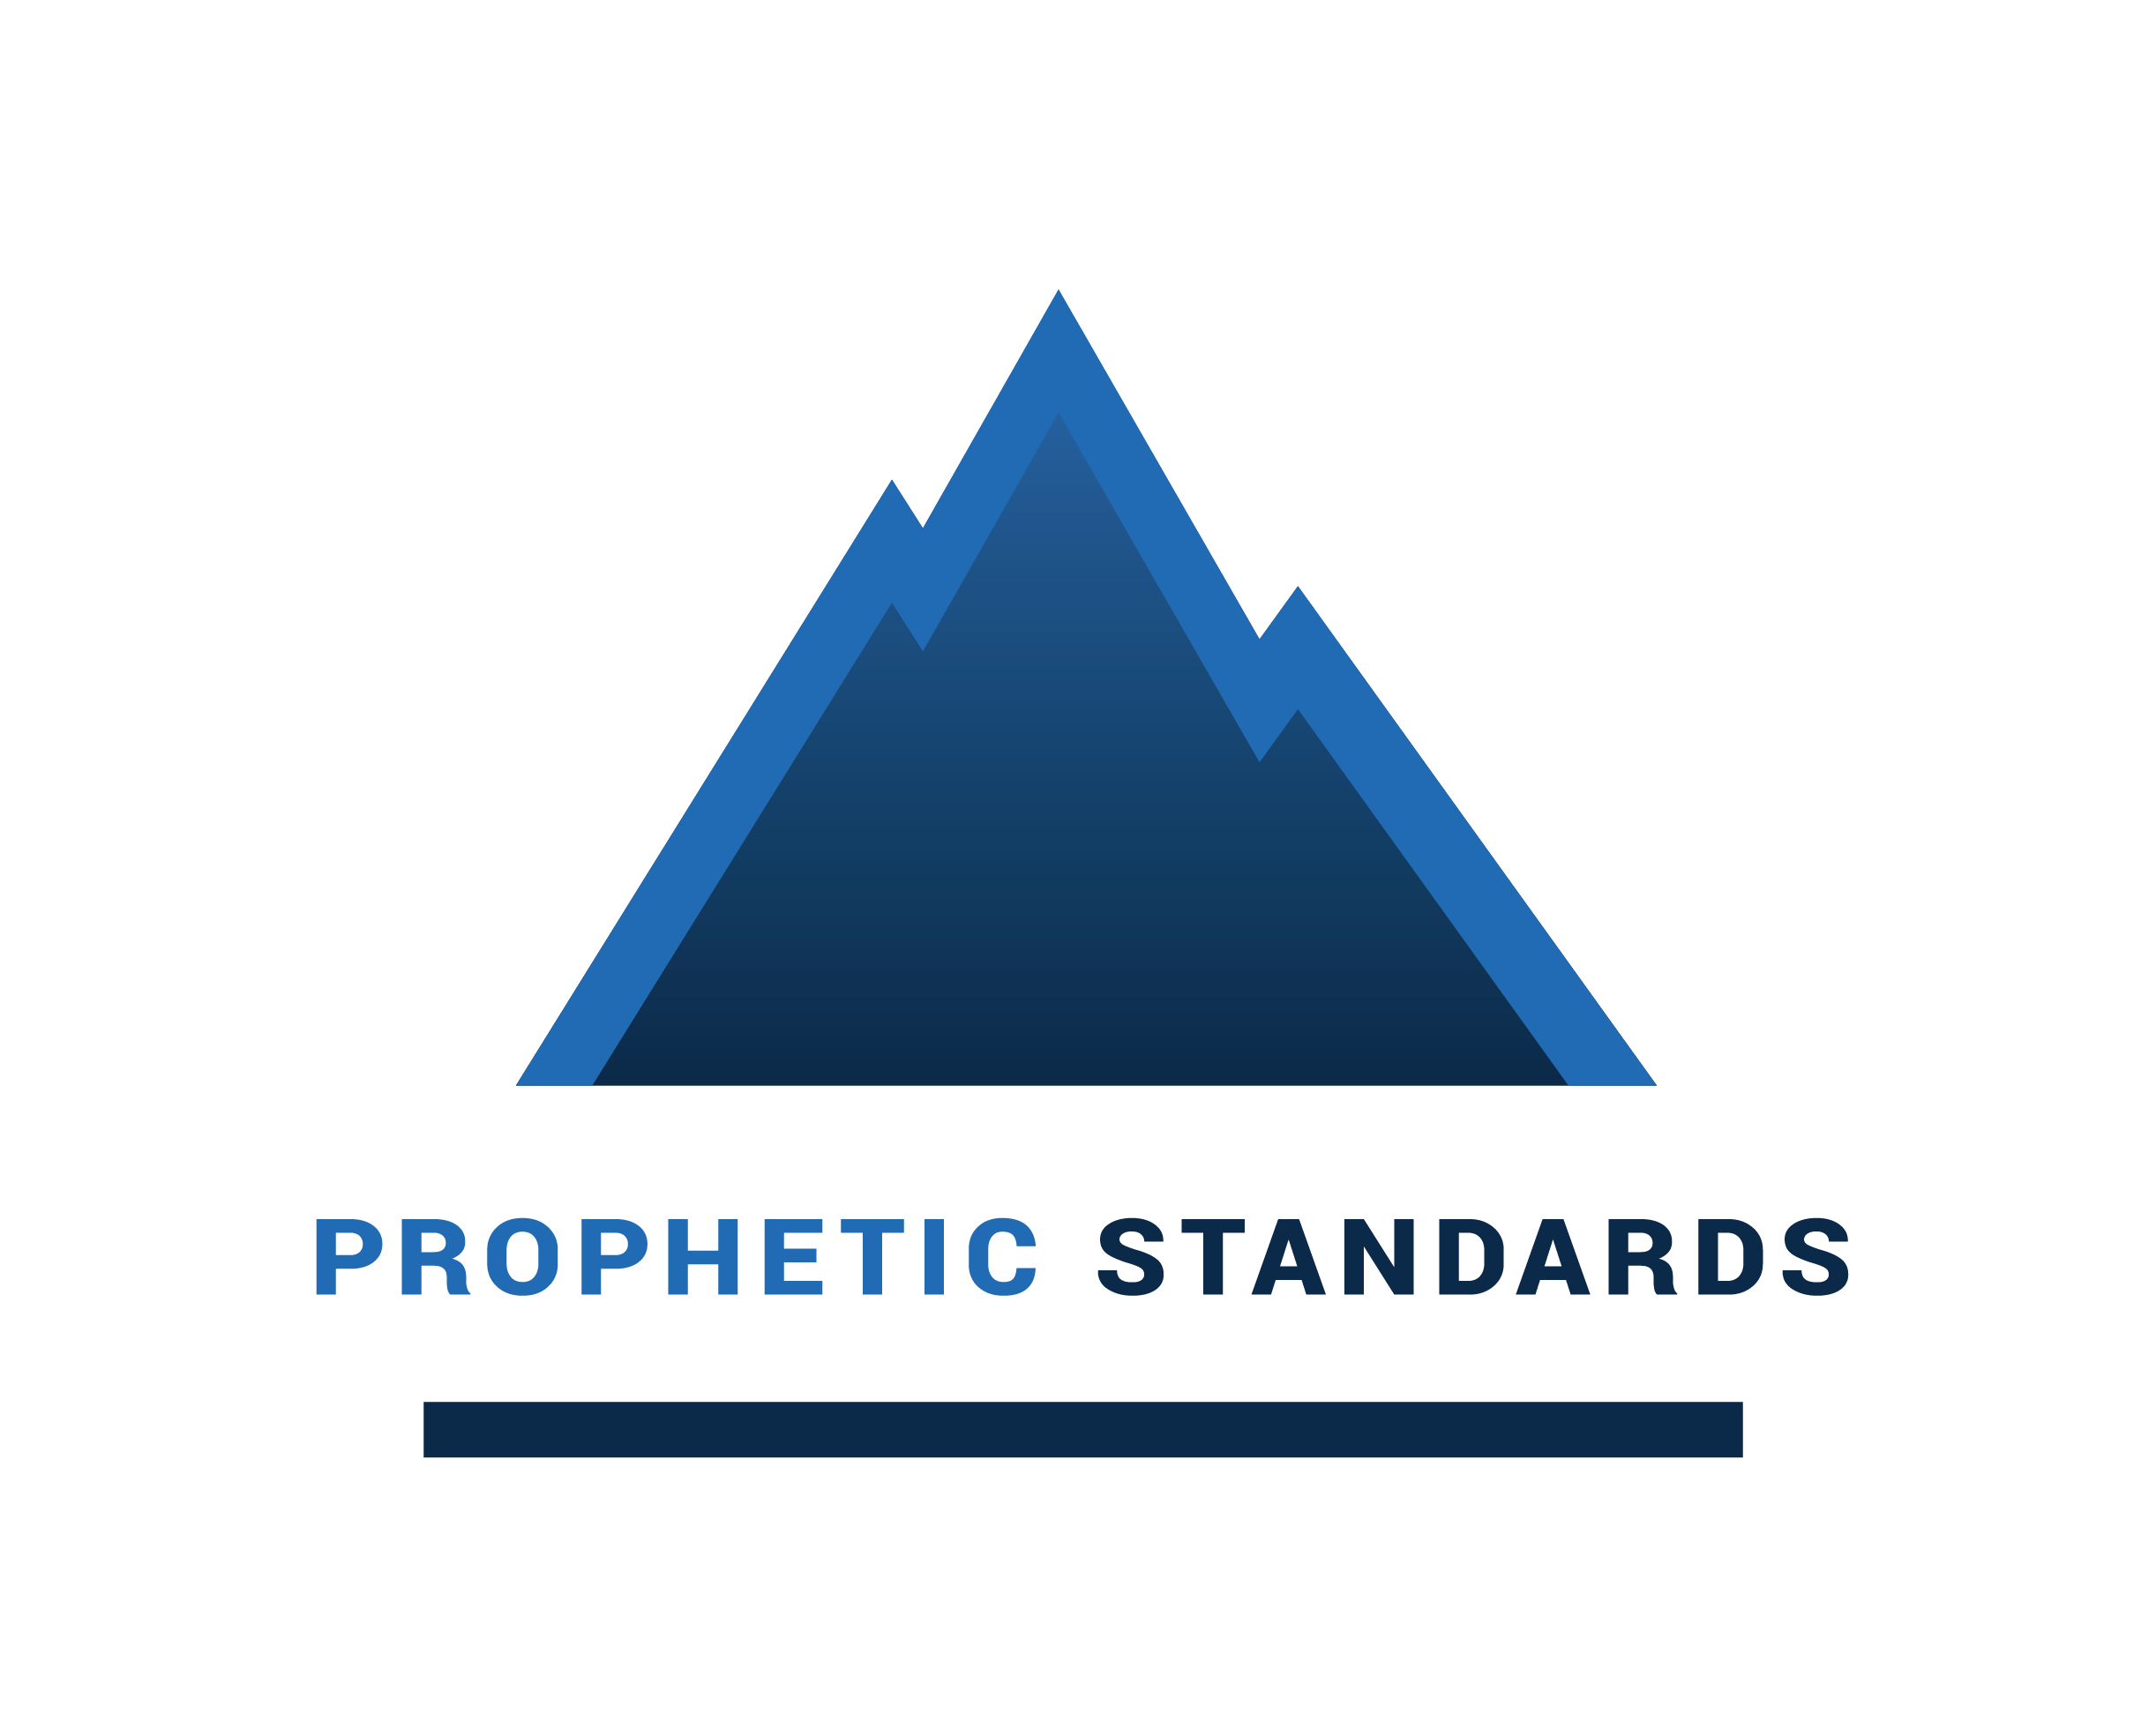 Prophetic Standards Statement